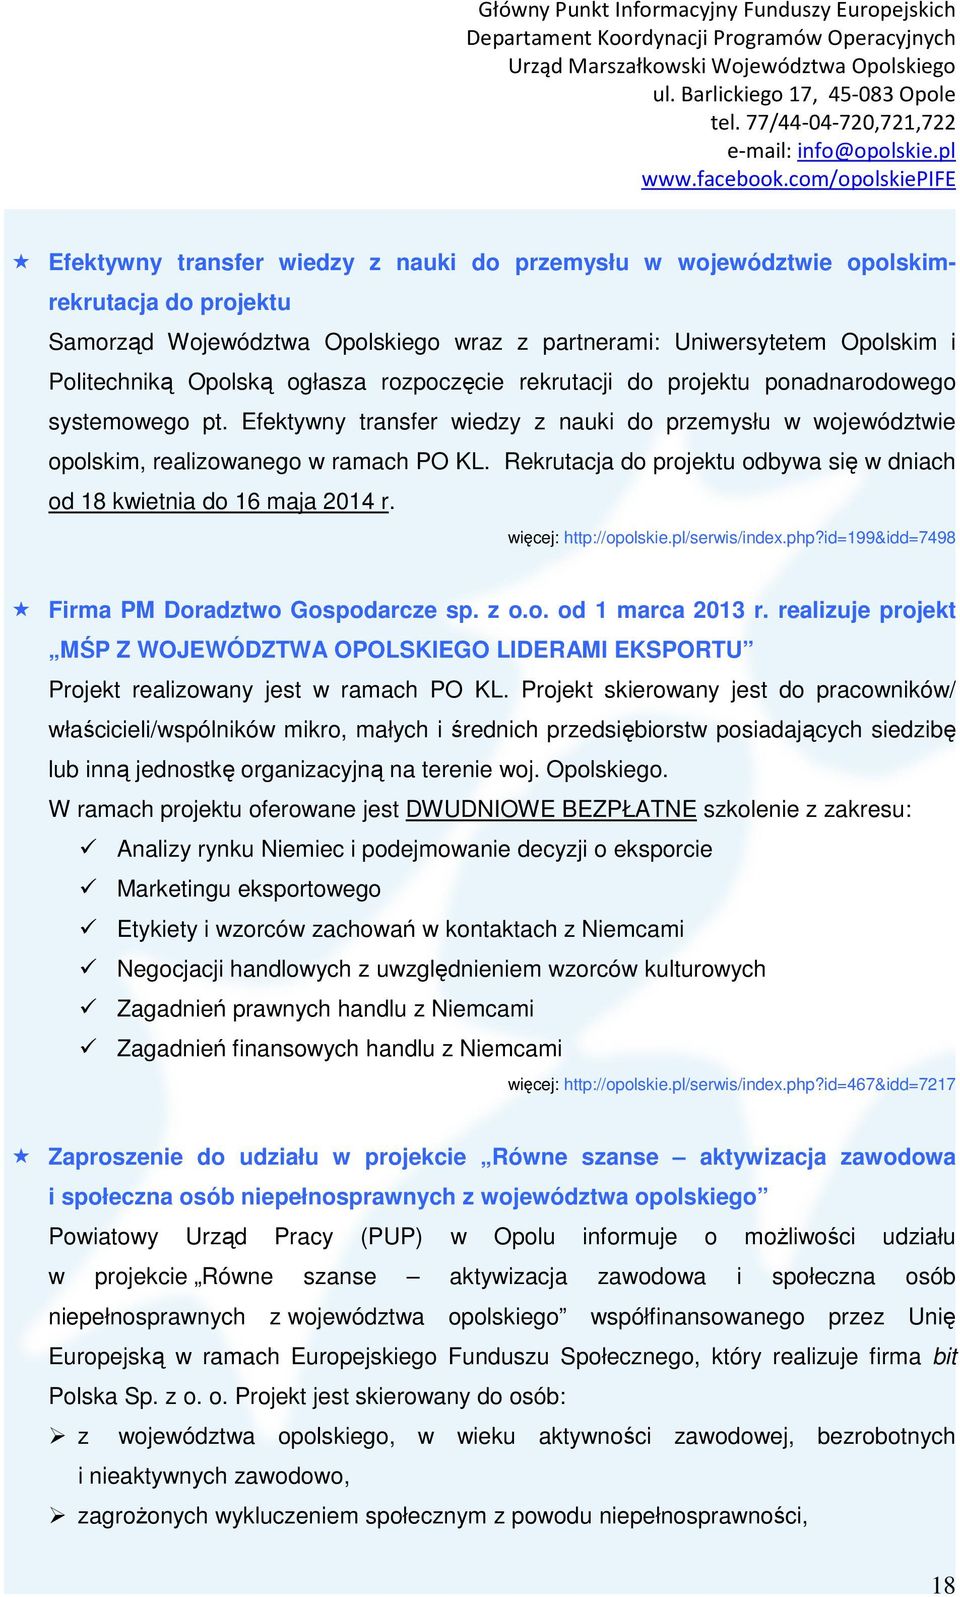 Rekrutacja do projektu odbywa się w dniach od 18 kwietnia do 16 maja 2014 r. więcej: http://opolskie.pl/serwis/index.php?id=199&idd=7498 Firma PM Doradztwo Gospodarcze sp. z o.o. od 1 marca 2013 r.